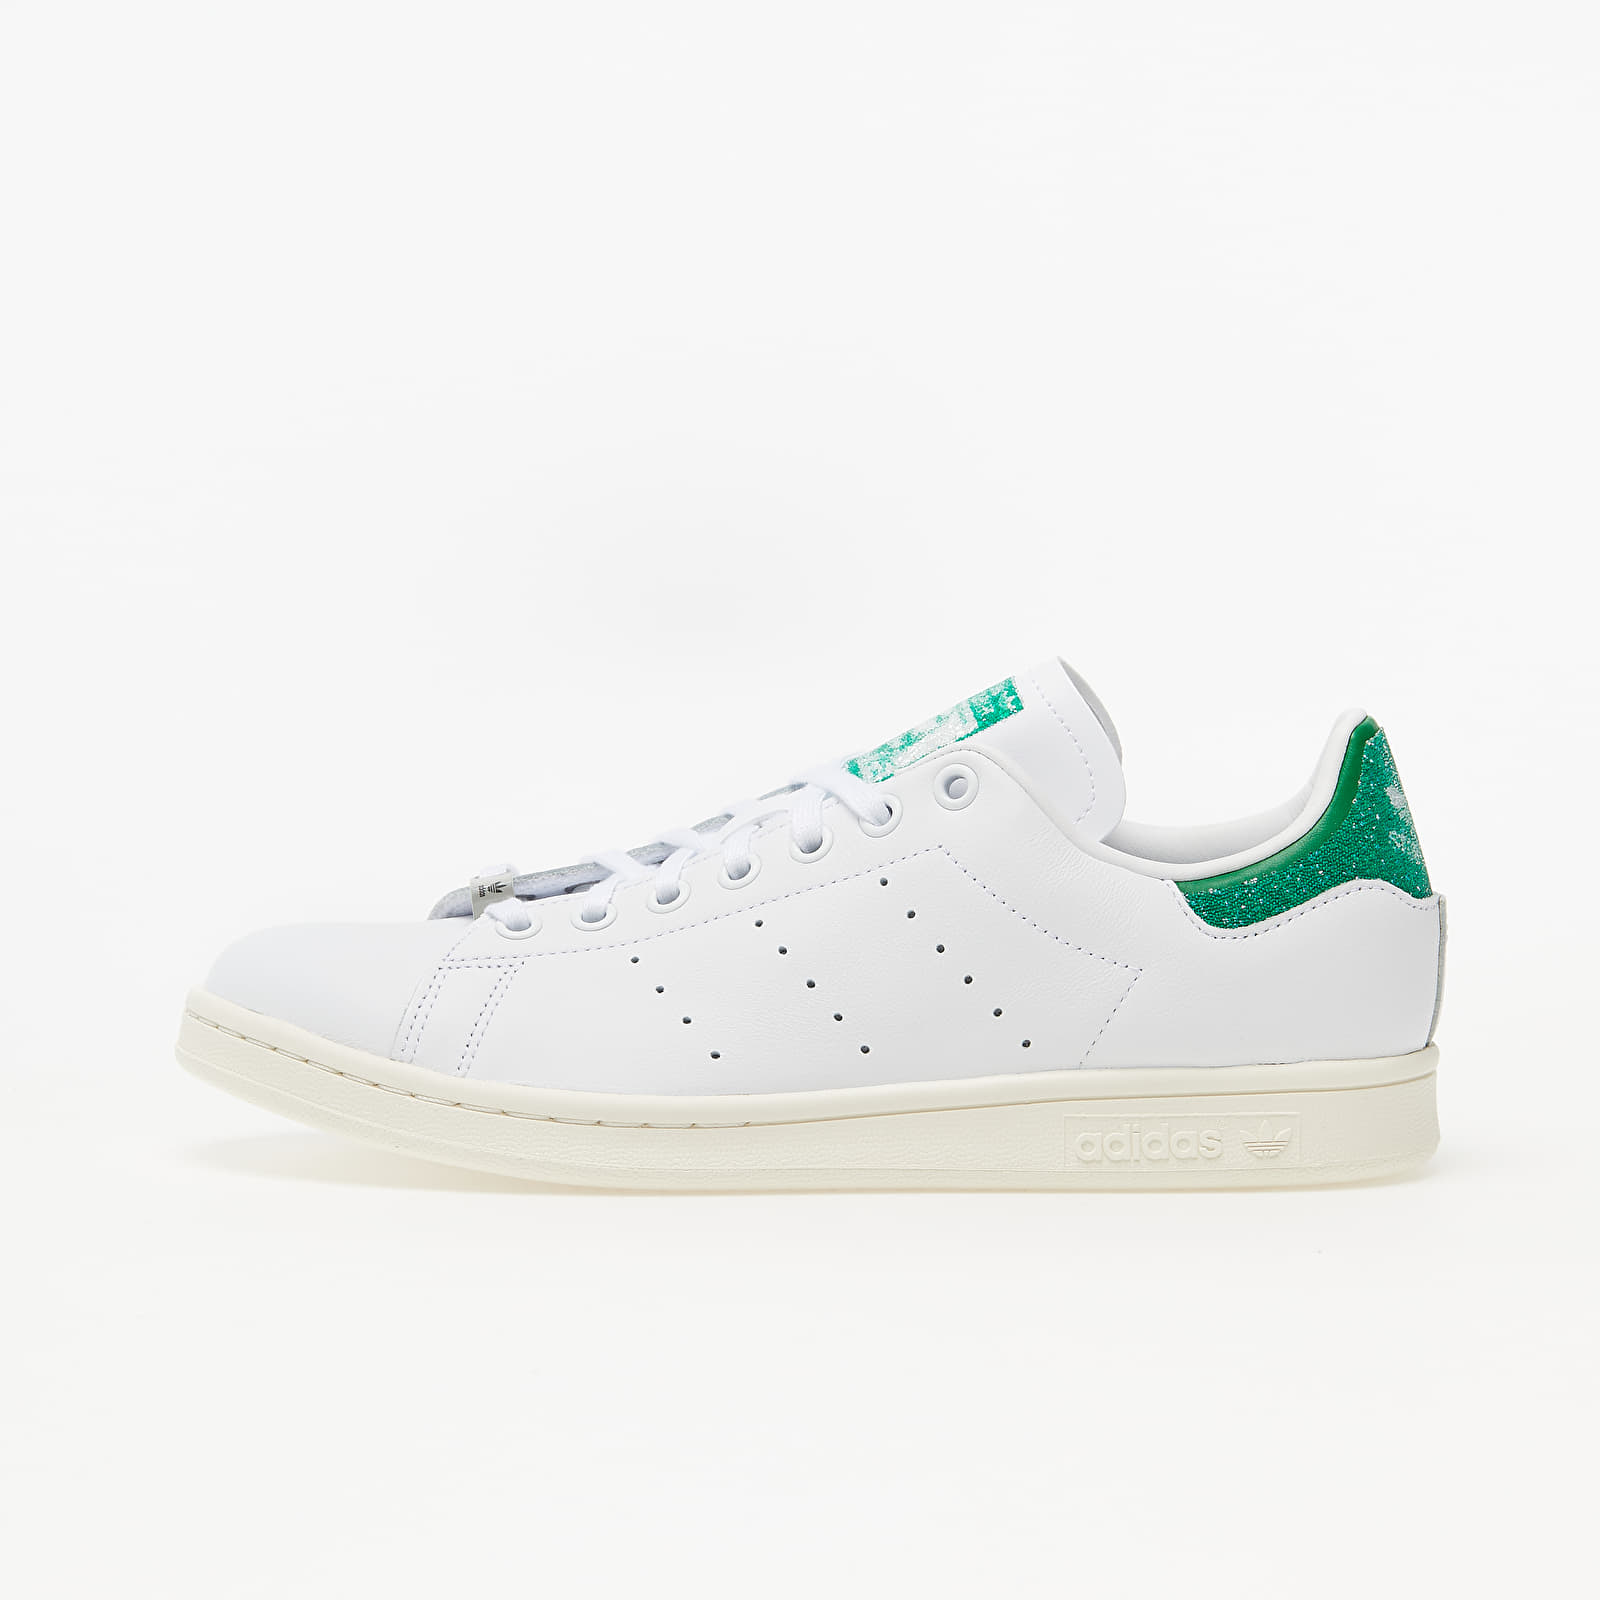 Men's shoes adidas x Swarovski Stan Smith Ftw White/ Green/ Off White